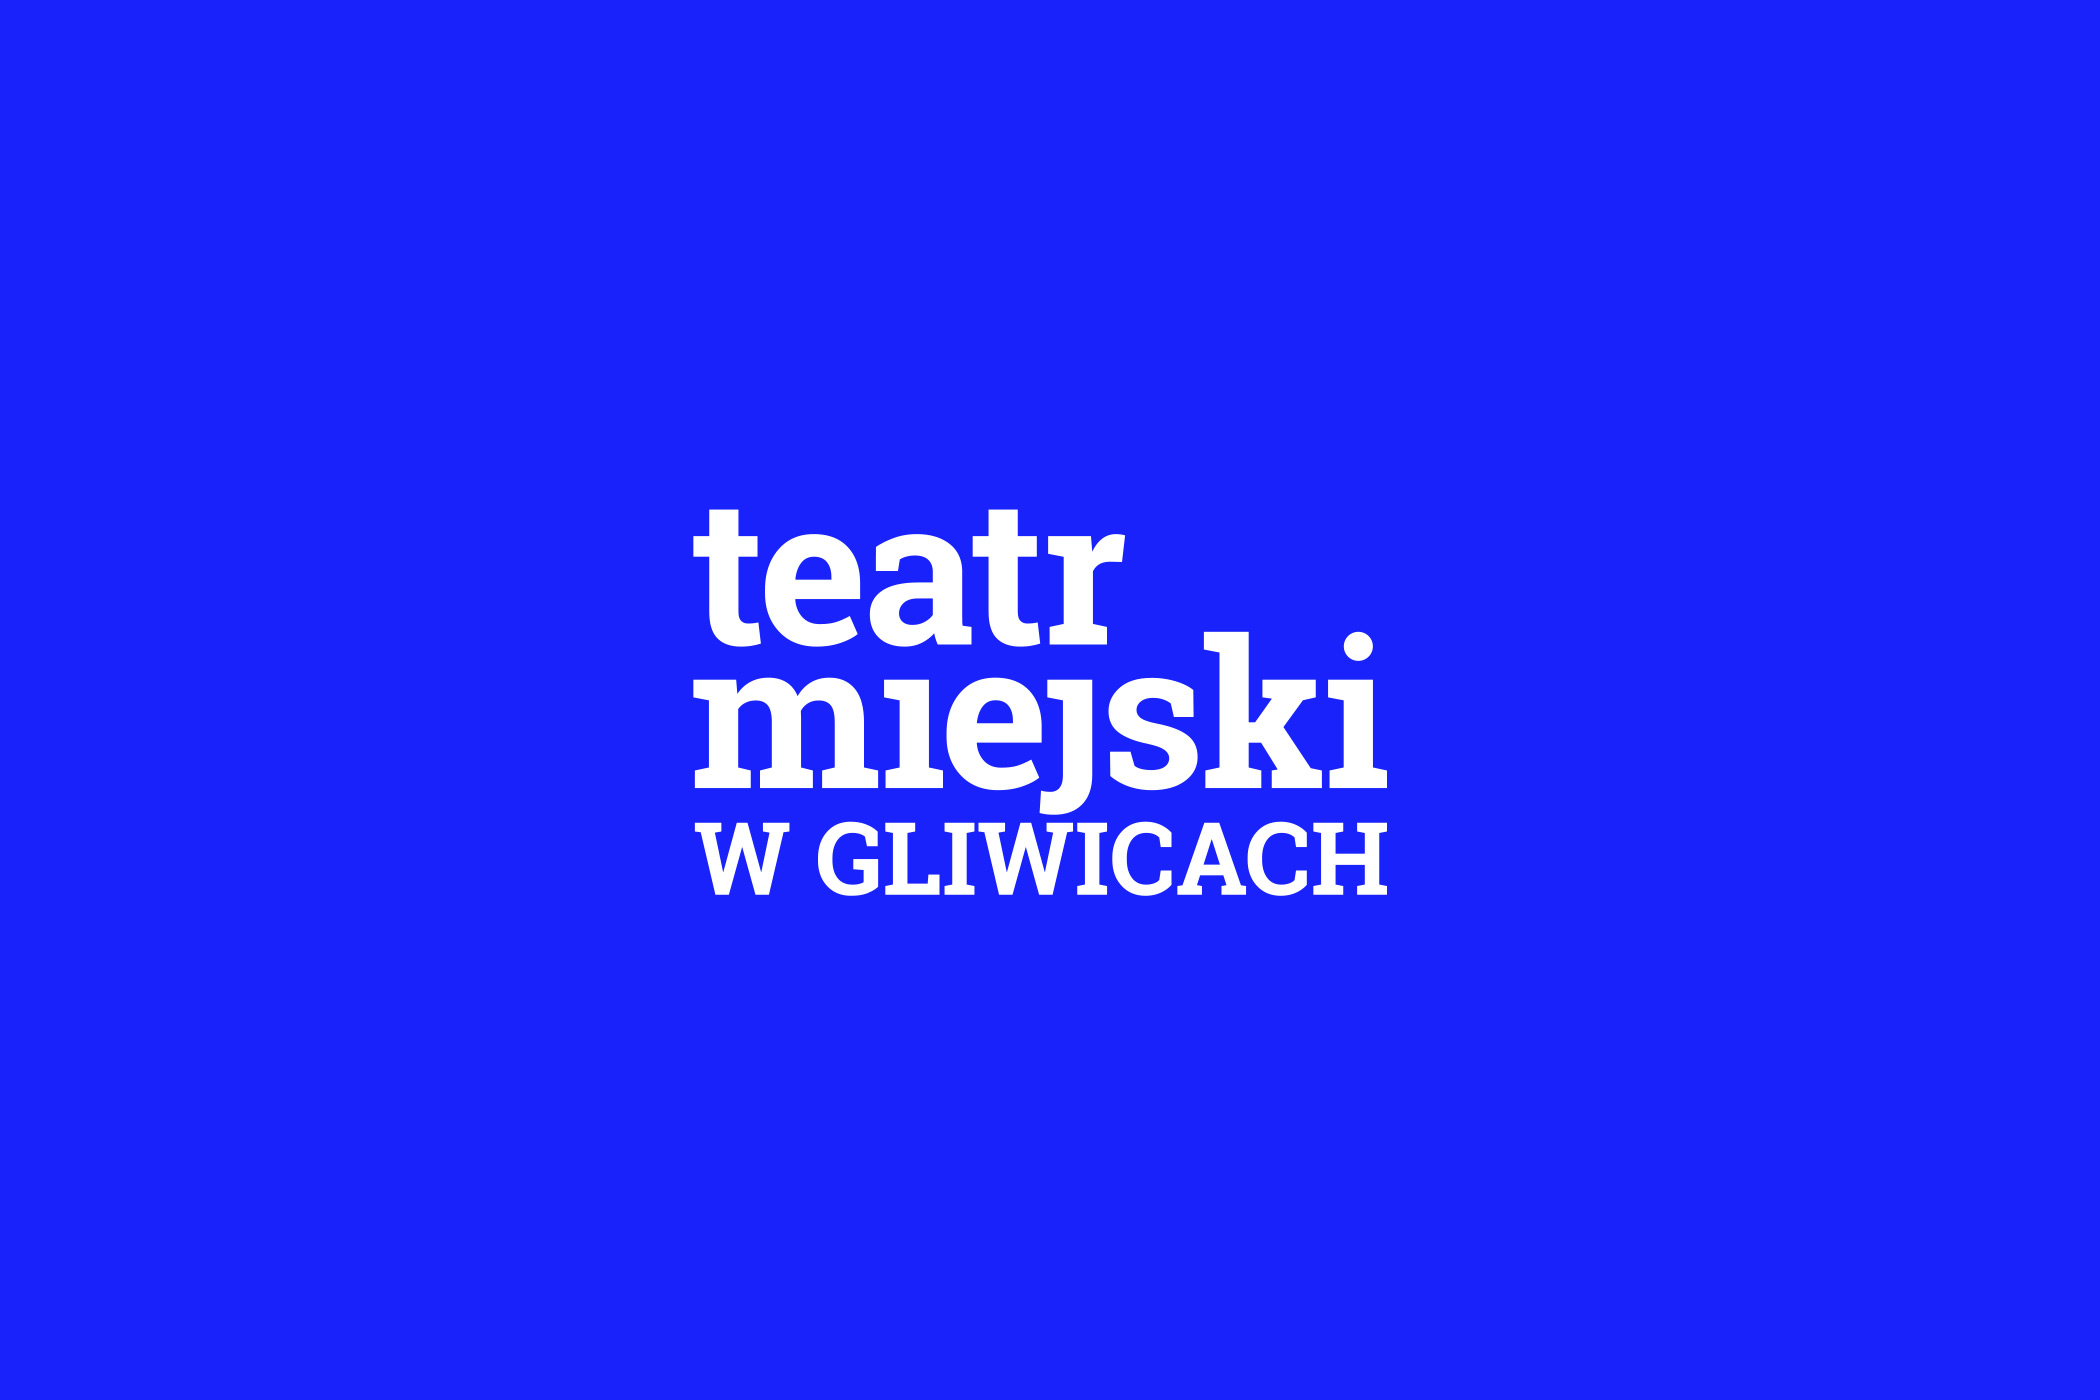 Teatr Miejski w Gliwicach